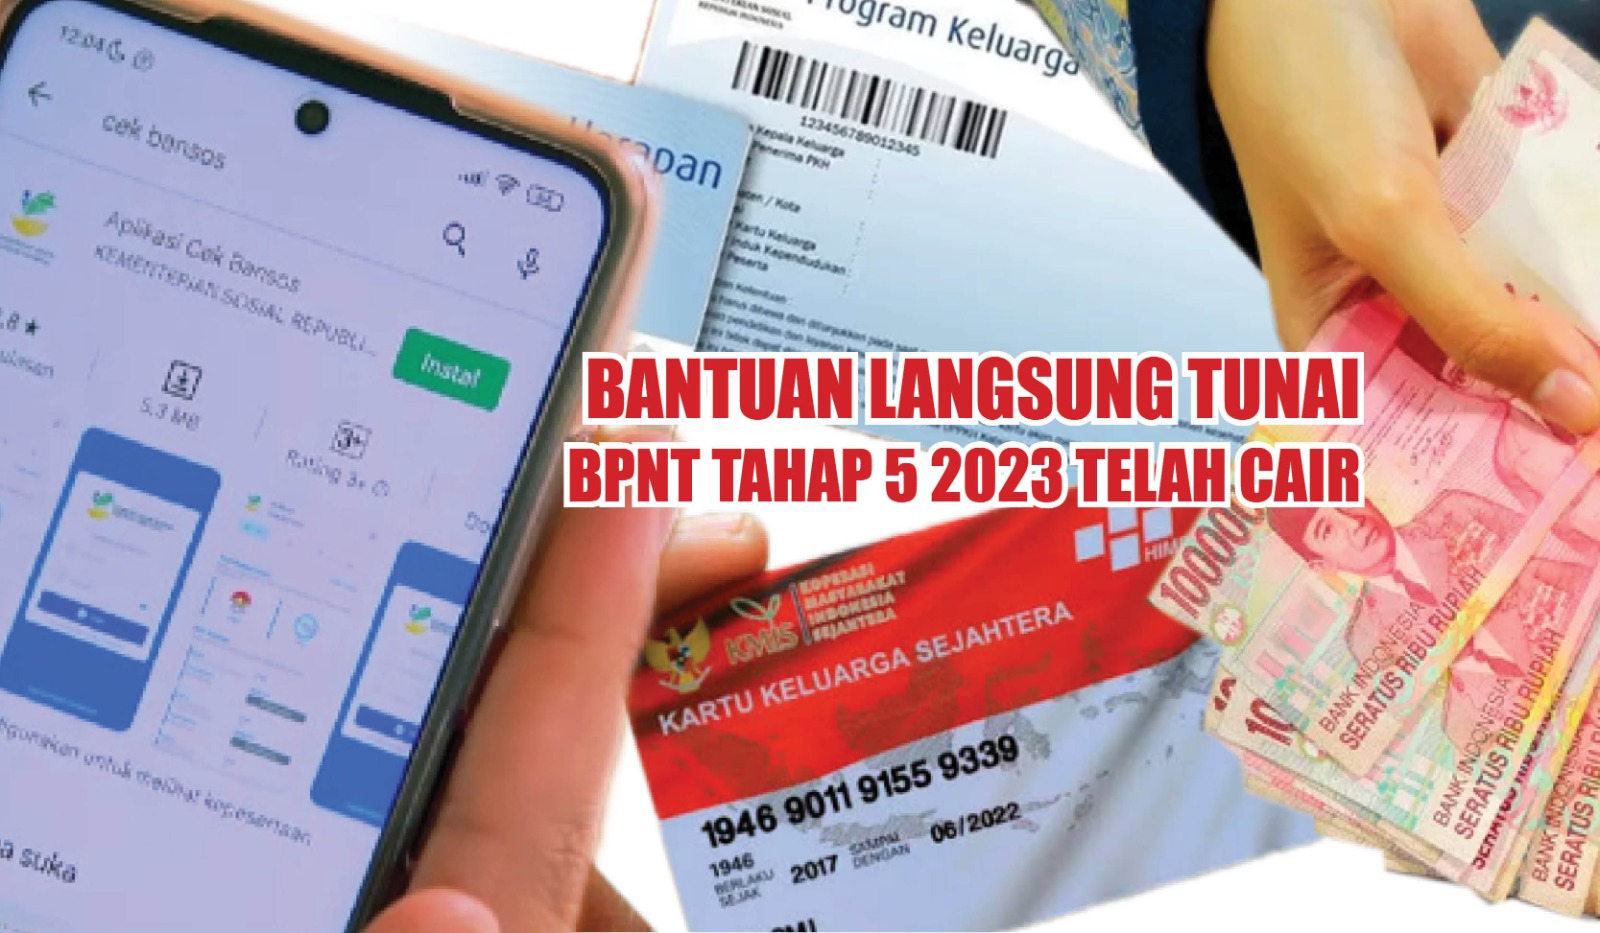 Bantuan Langsung Tunai BPNT Rp400.000 Telah Cair, Penerima Manfaat Diminta Cek Rekening